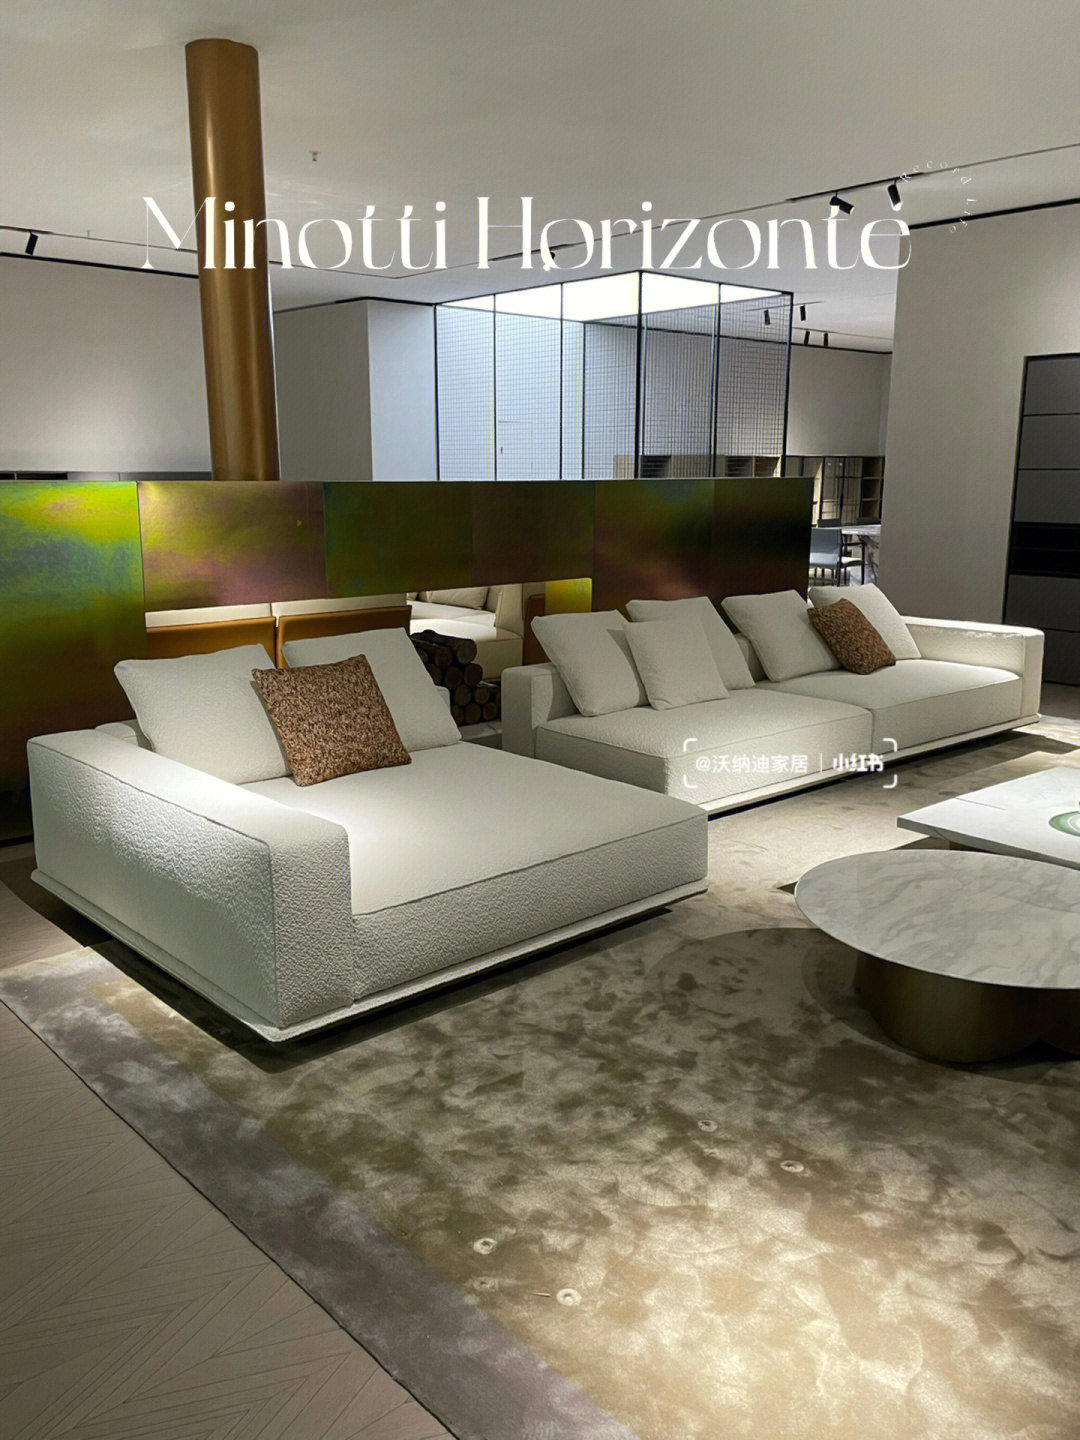 品牌:minotti品名:horizonte(地平线沙发)这是minotti2022年的新款